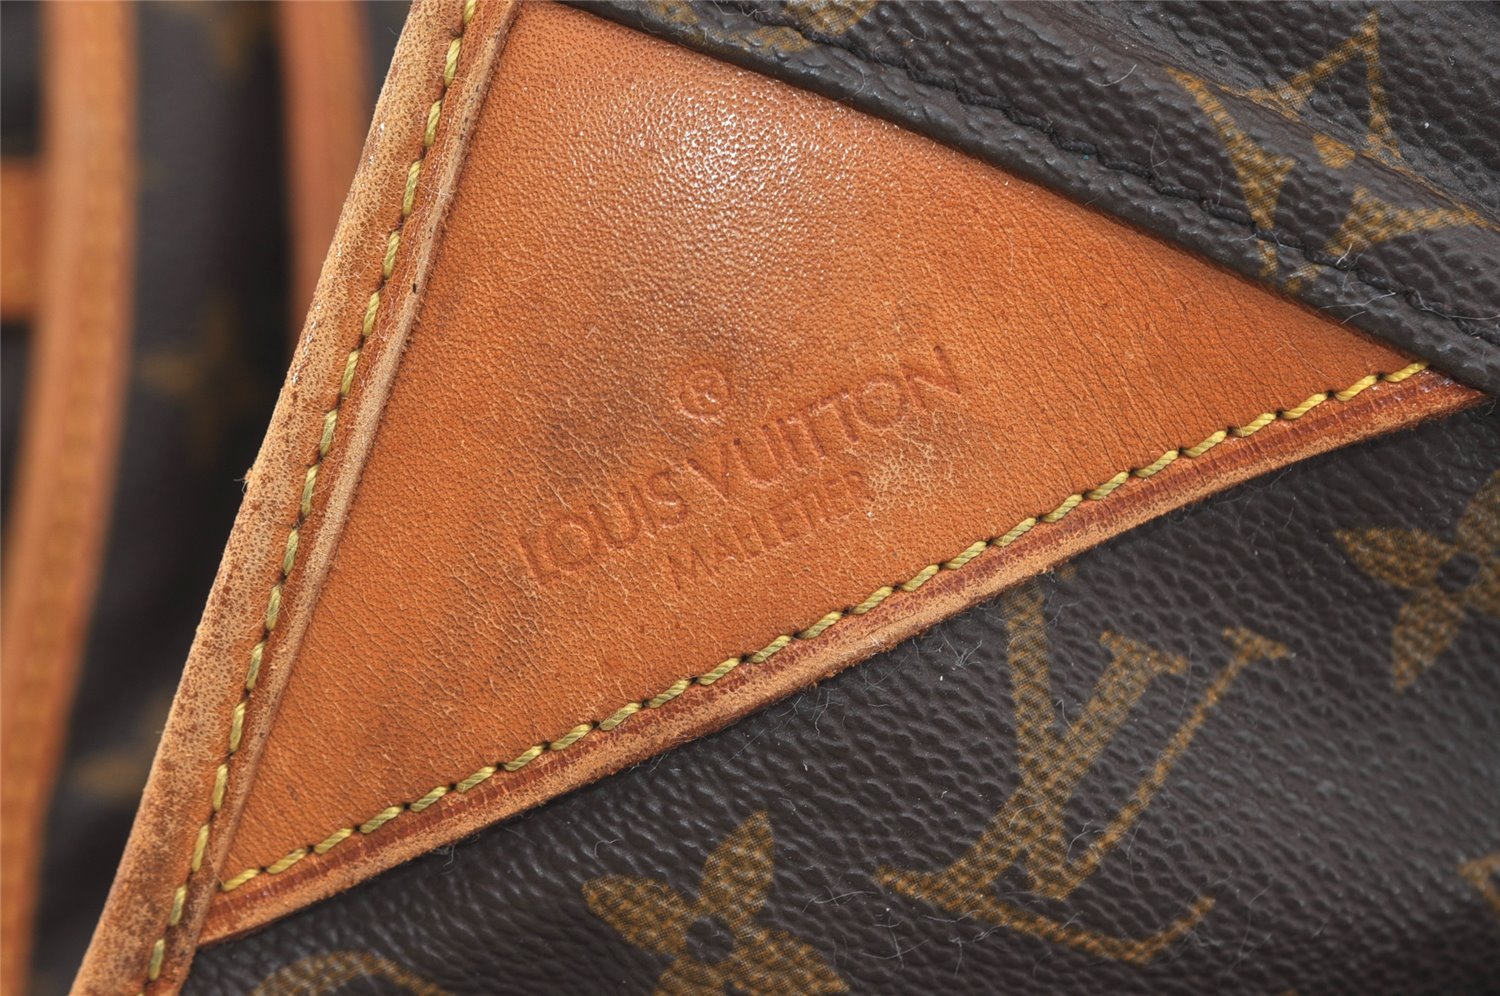 Auth Louis Vuitton Monogram Portable Cabine Garment Bag Hangers Travel LV 4888J